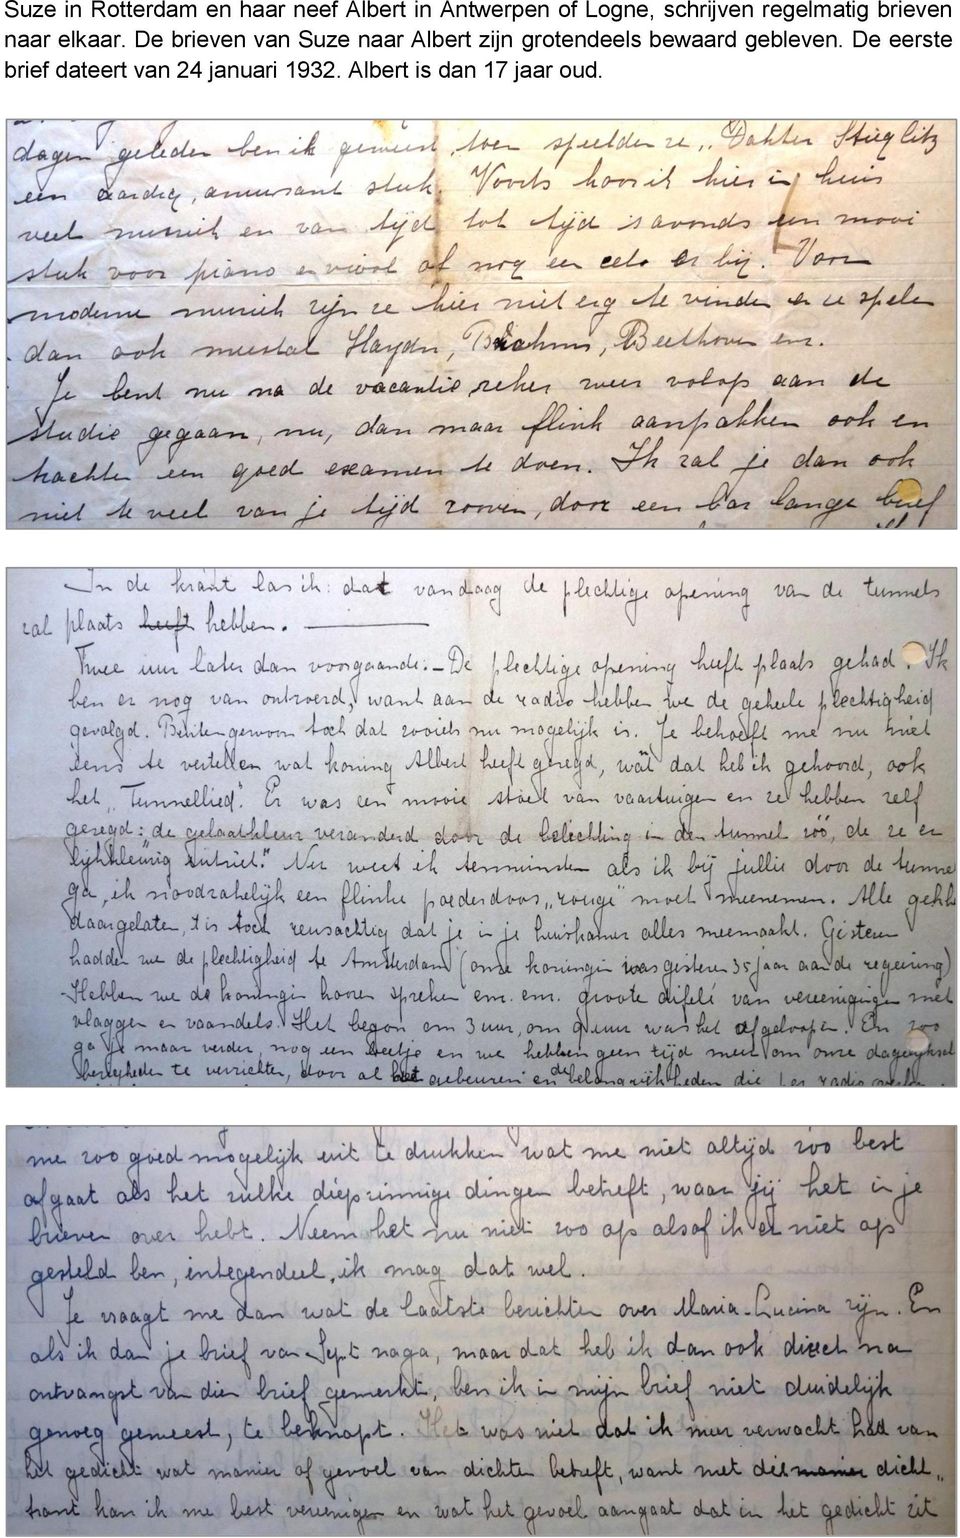 De brieven van Suze naar Albert zijn grotendeels bewaard